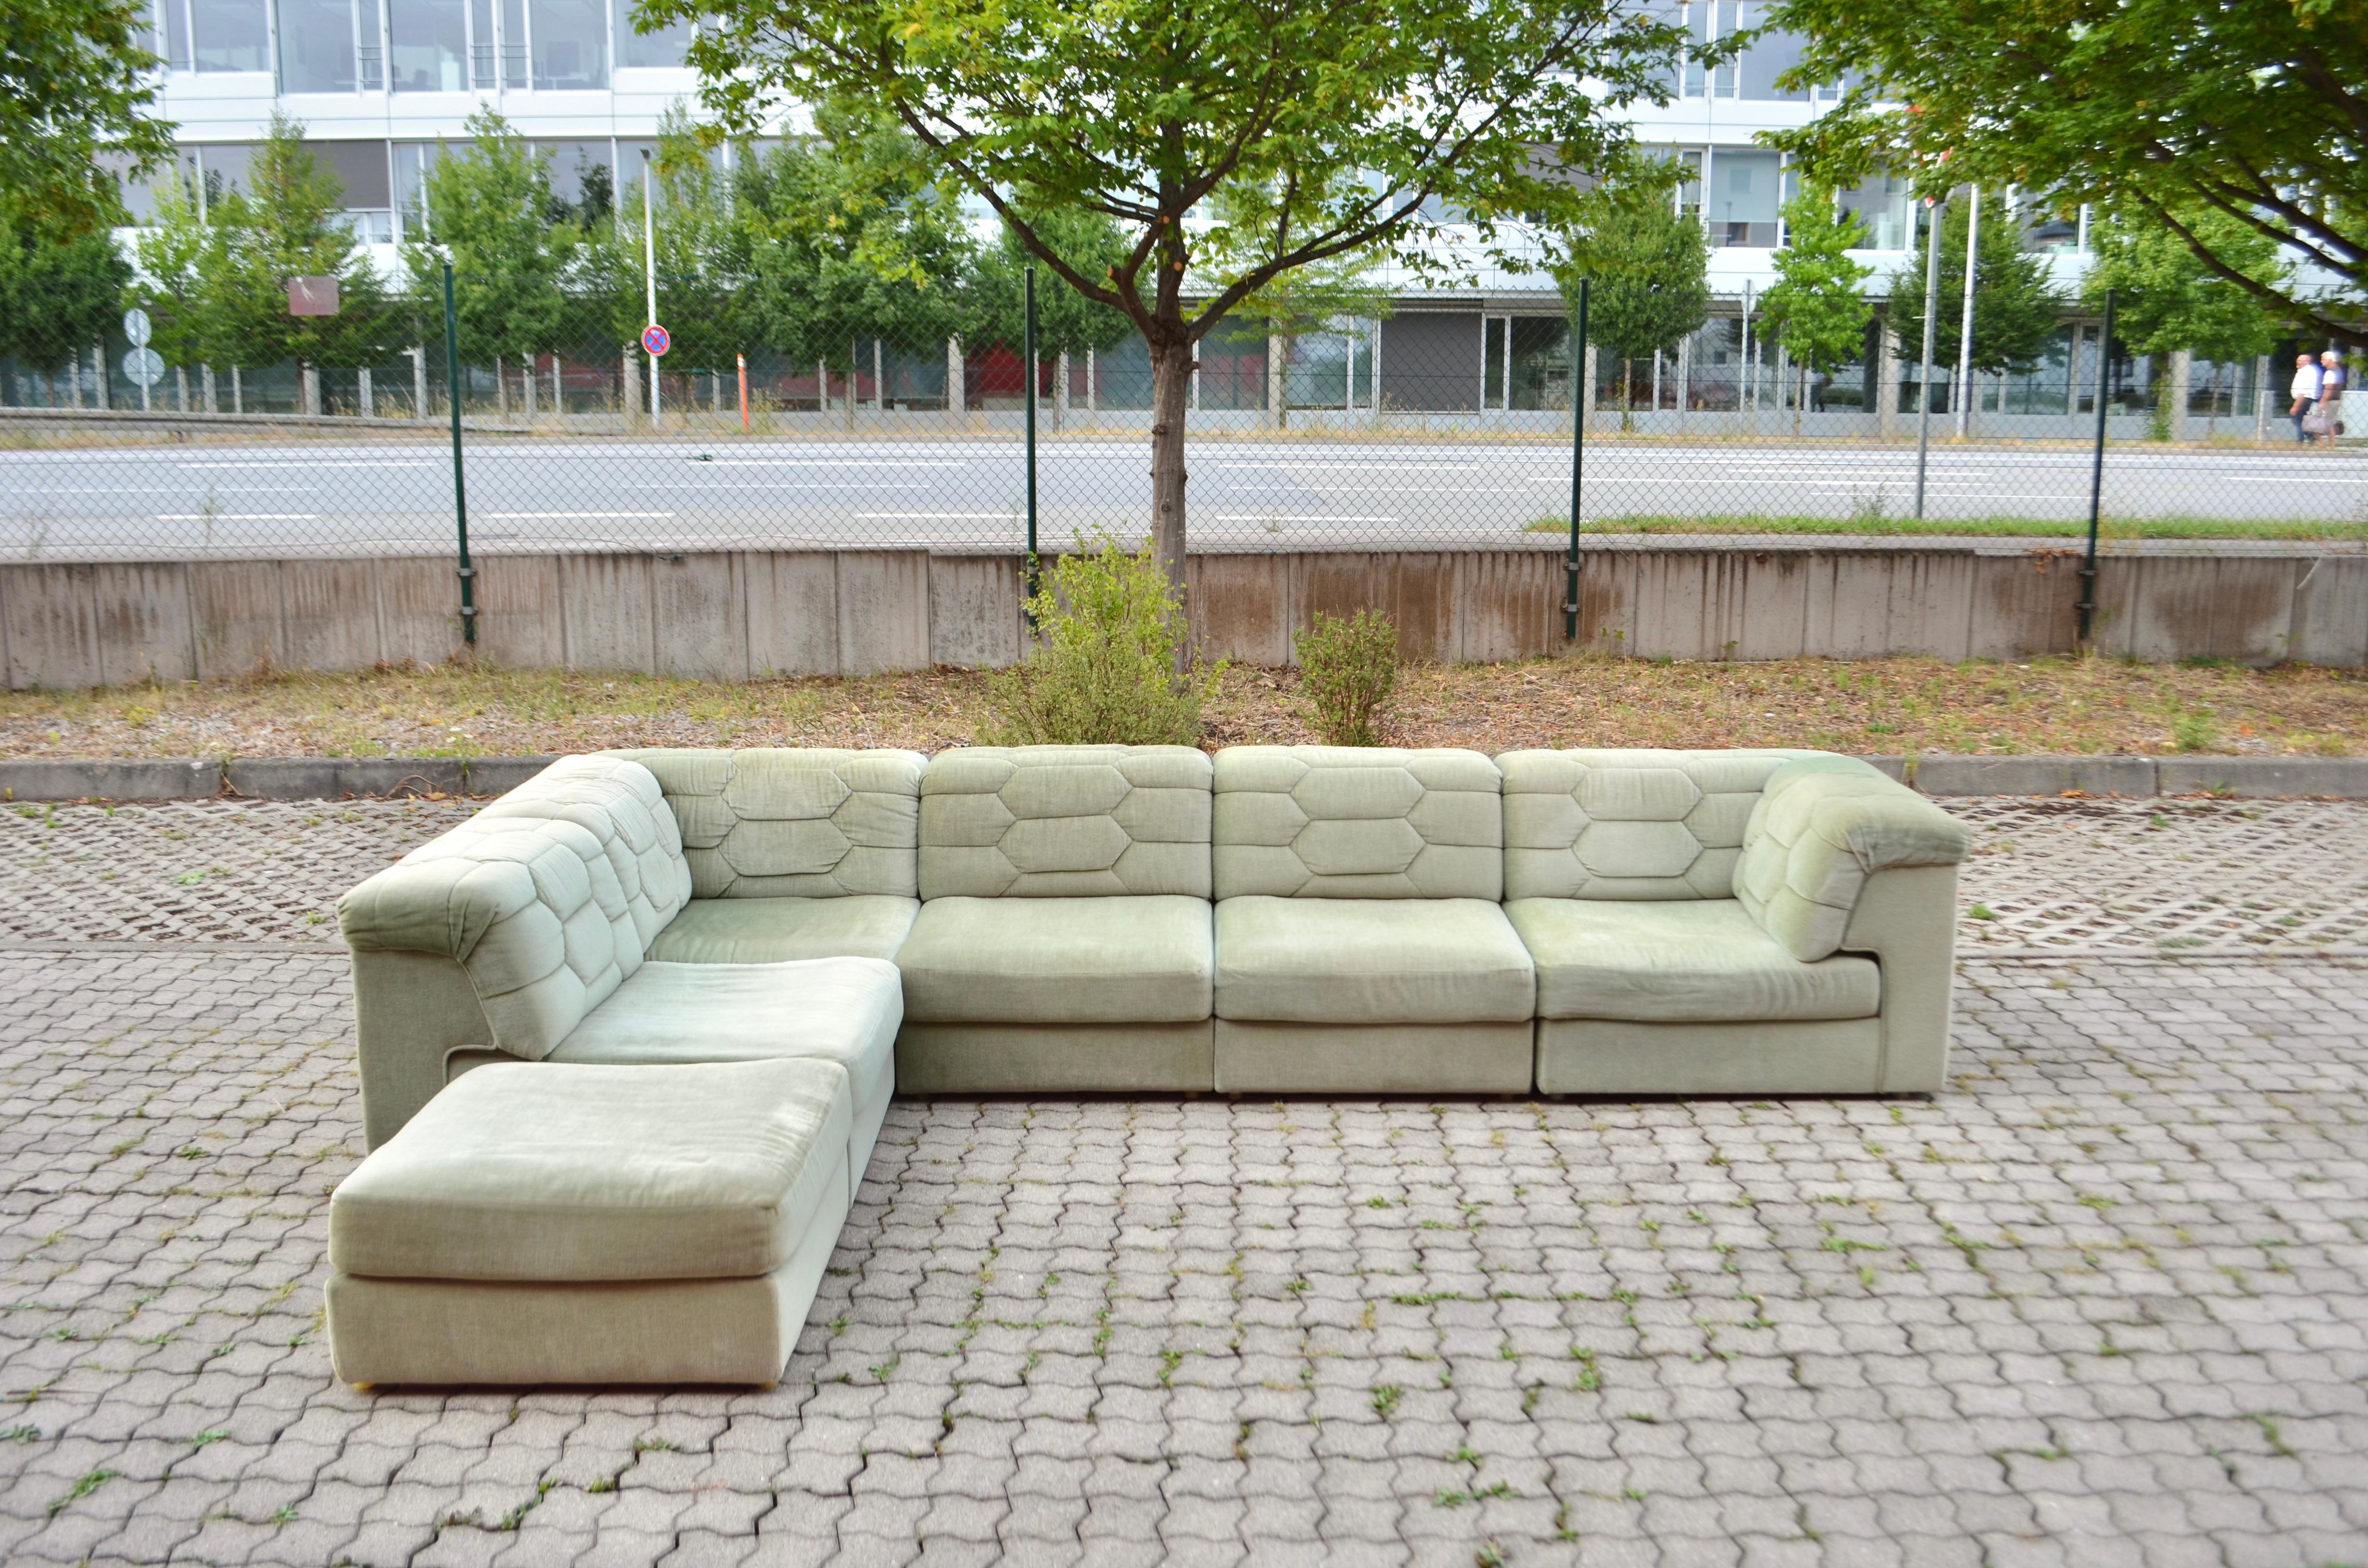 Ce canapé sectionnel modulaire a été fabriqué par Laauser en Allemagne.
Il s'agit d'un design pur des années 70 avec une forme moderne intemporelle.
Le tissu est en Mohair et a une belle couleur vert pastel.
La structure de chaque élément est en